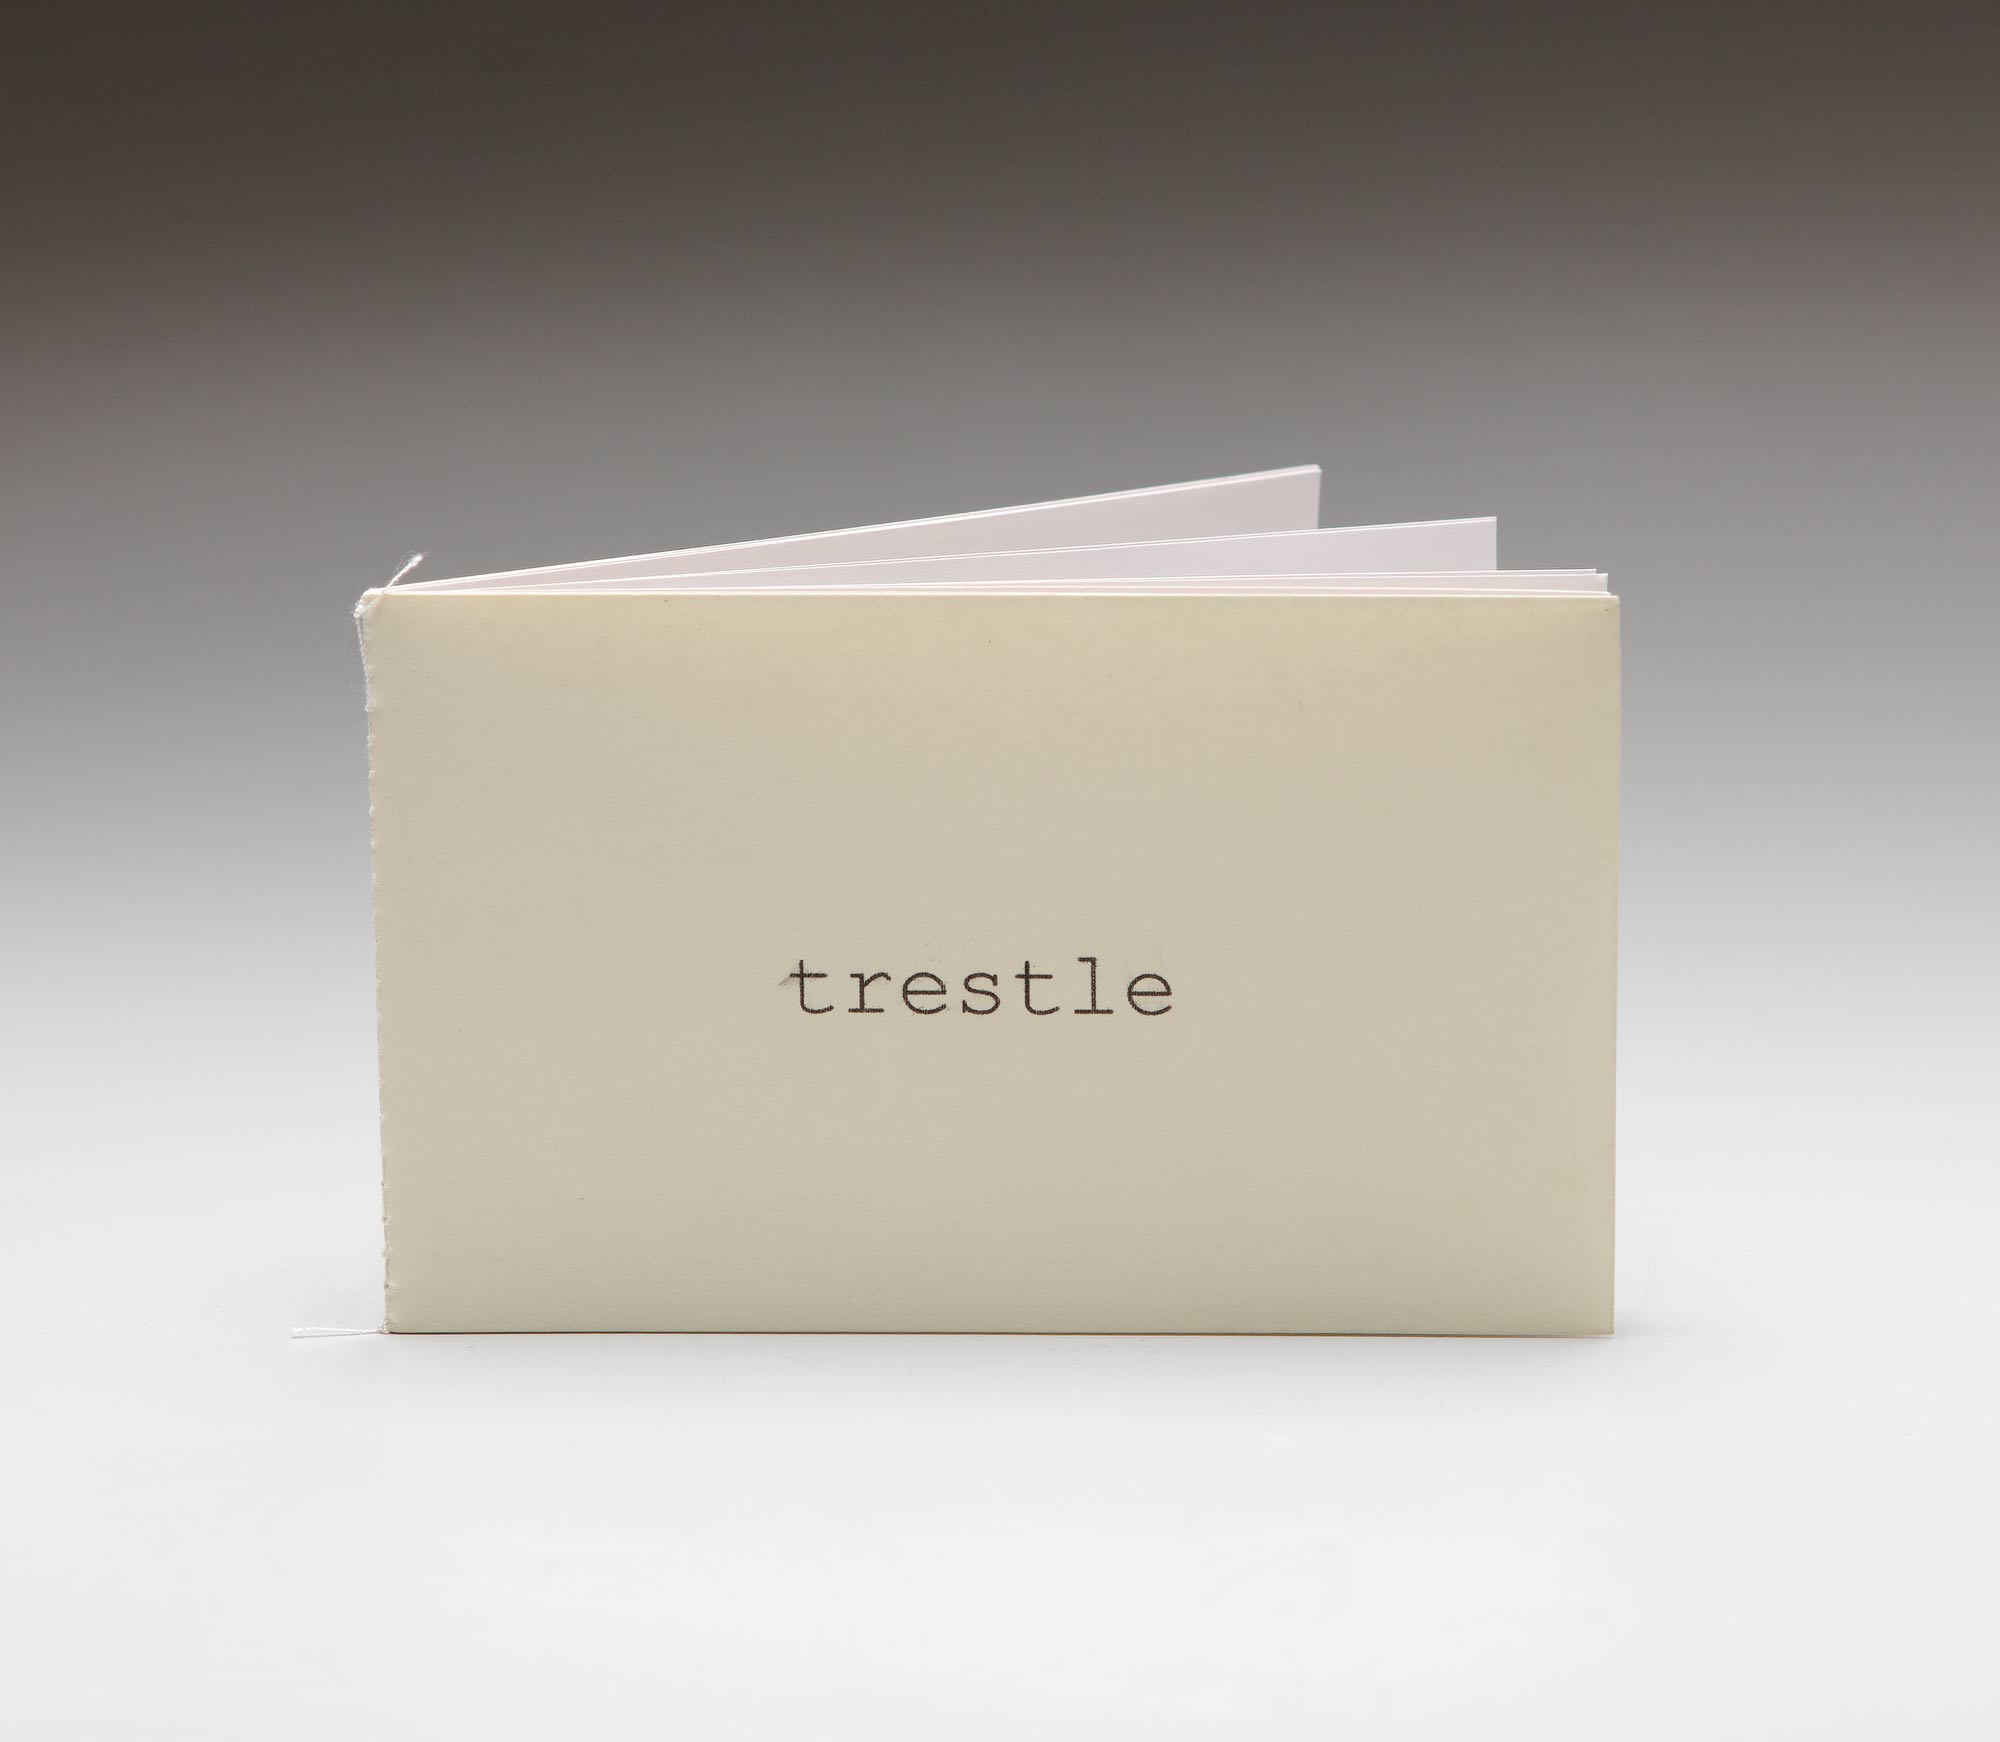 Trestle (Künstlerbuch)